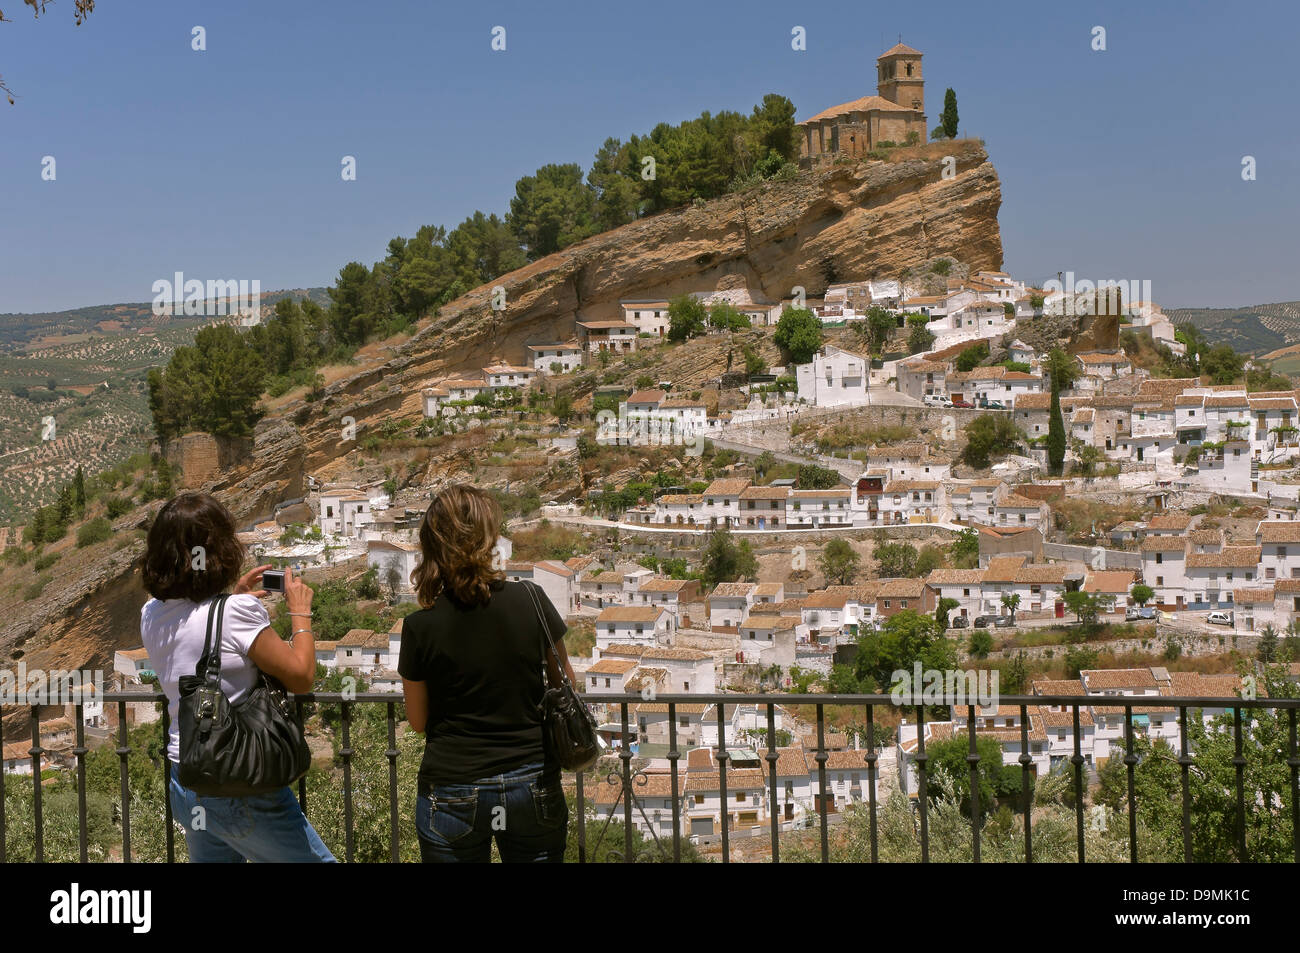 Vue panoramique et les touristes, Montefrio, Granada province, région d'Andalousie, Espagne, Europe Banque D'Images